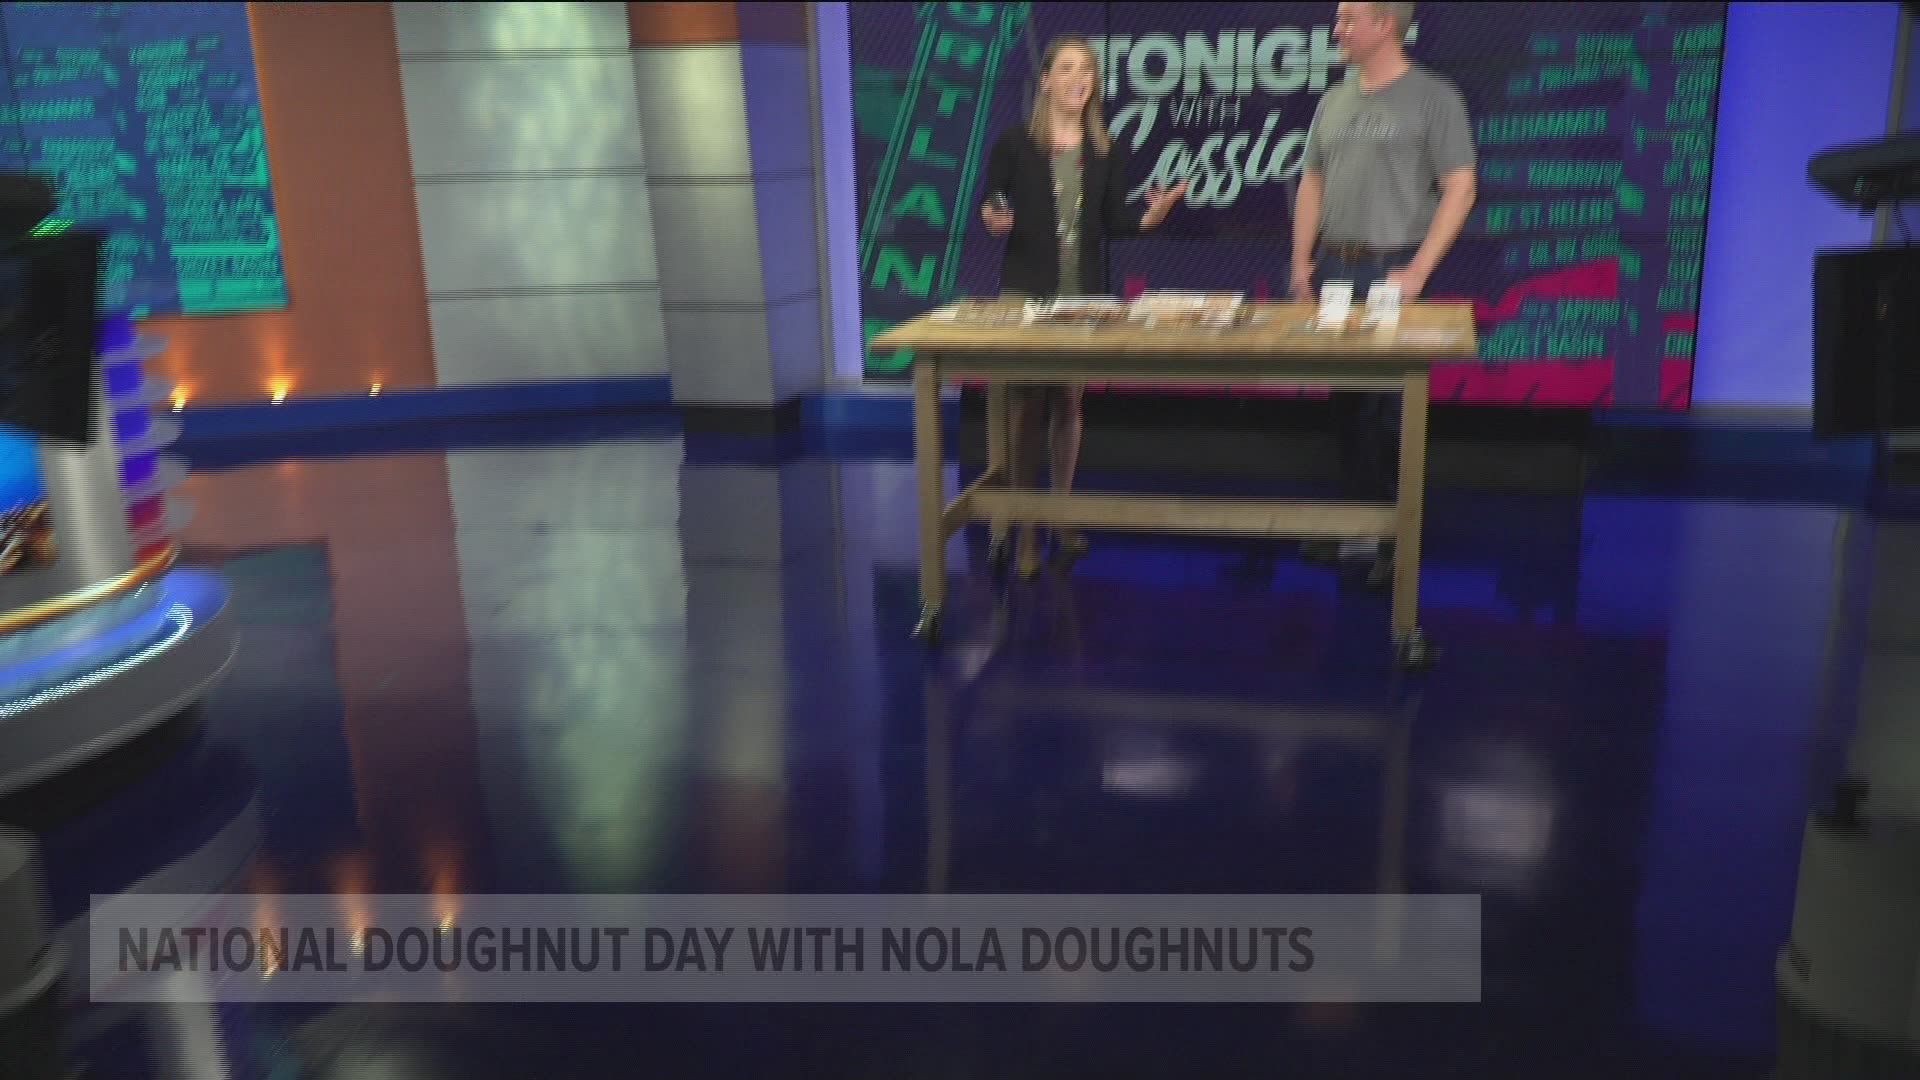 NOLA Doughnuts are made with their unique La'ssant dough. 

noladoughnuts.com

#TonightwithCassidy